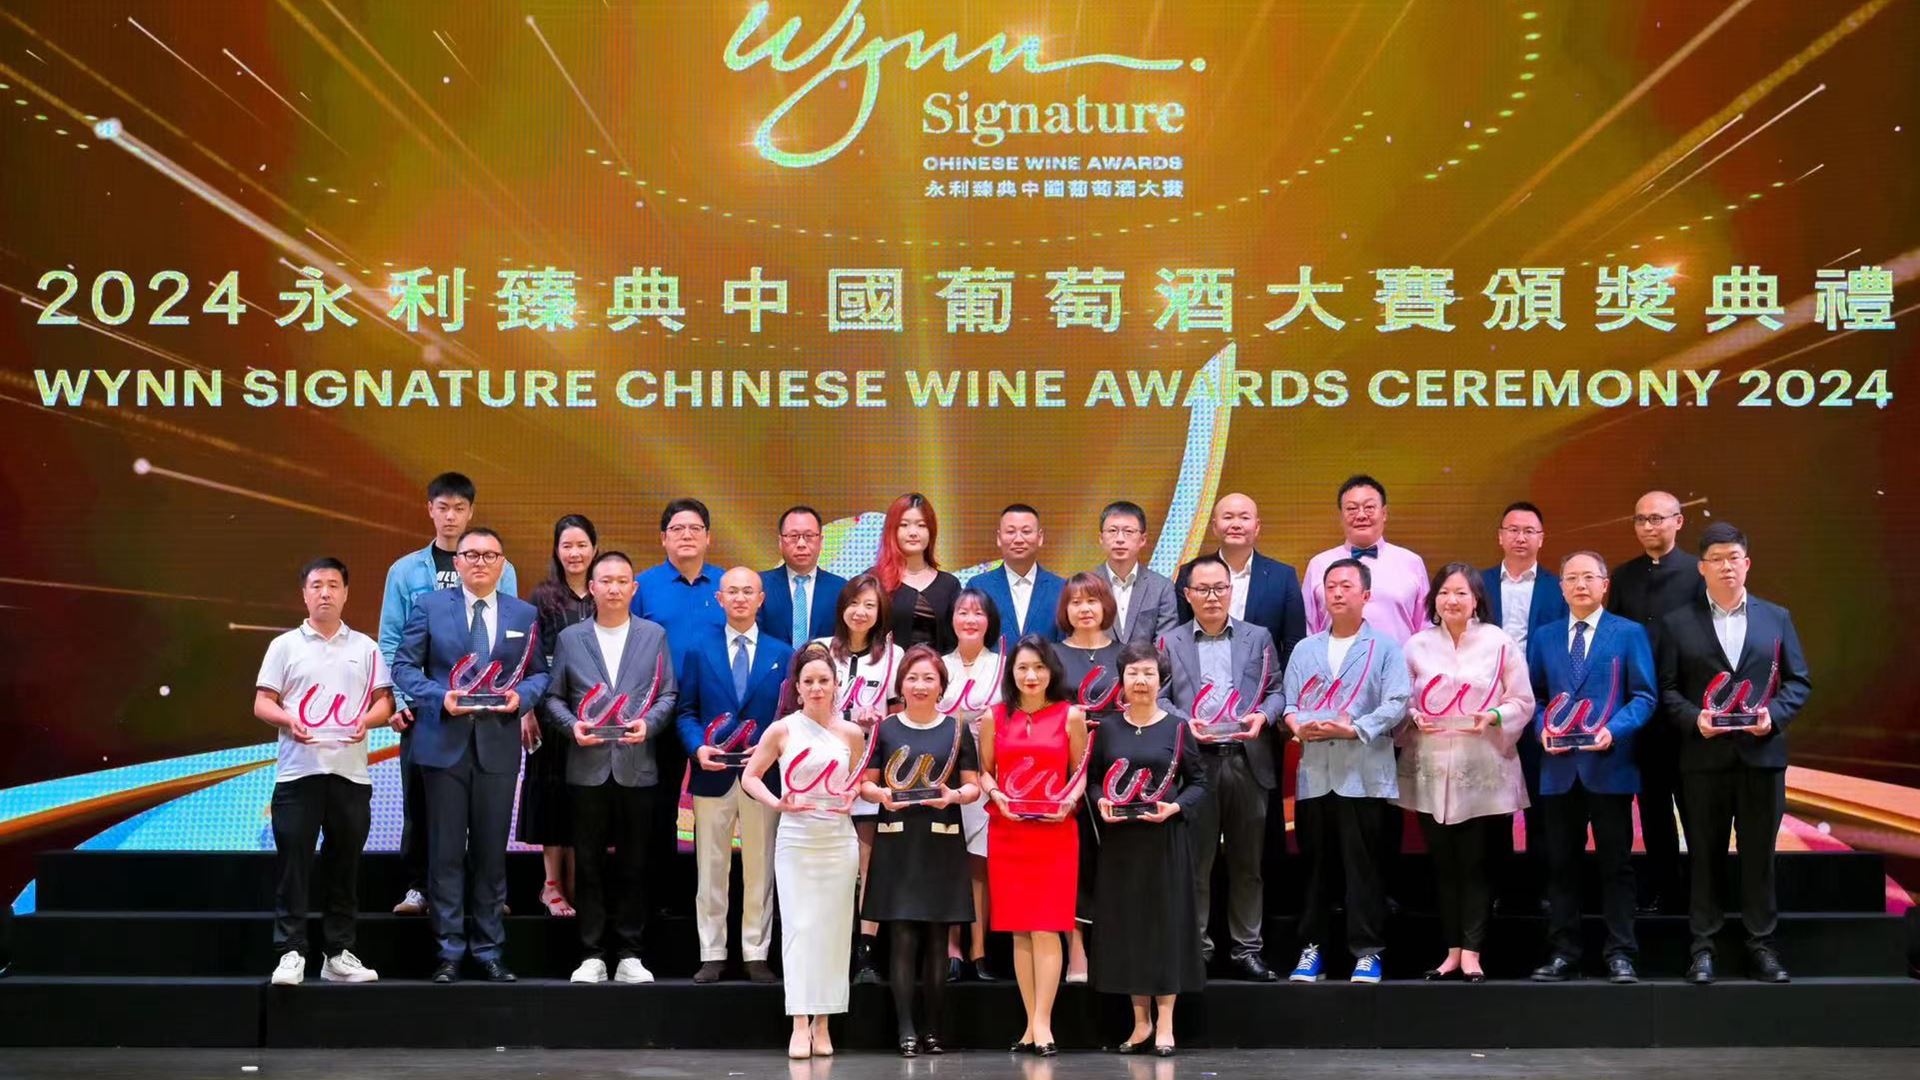 于全球最大型以国际标准评审的中国葡萄酒大赛中，27 位全球顶尖权威评审挑选出23 款酒品，并颁授三大得奖类别下表彰卓越品种和优秀产区的多项奖项。